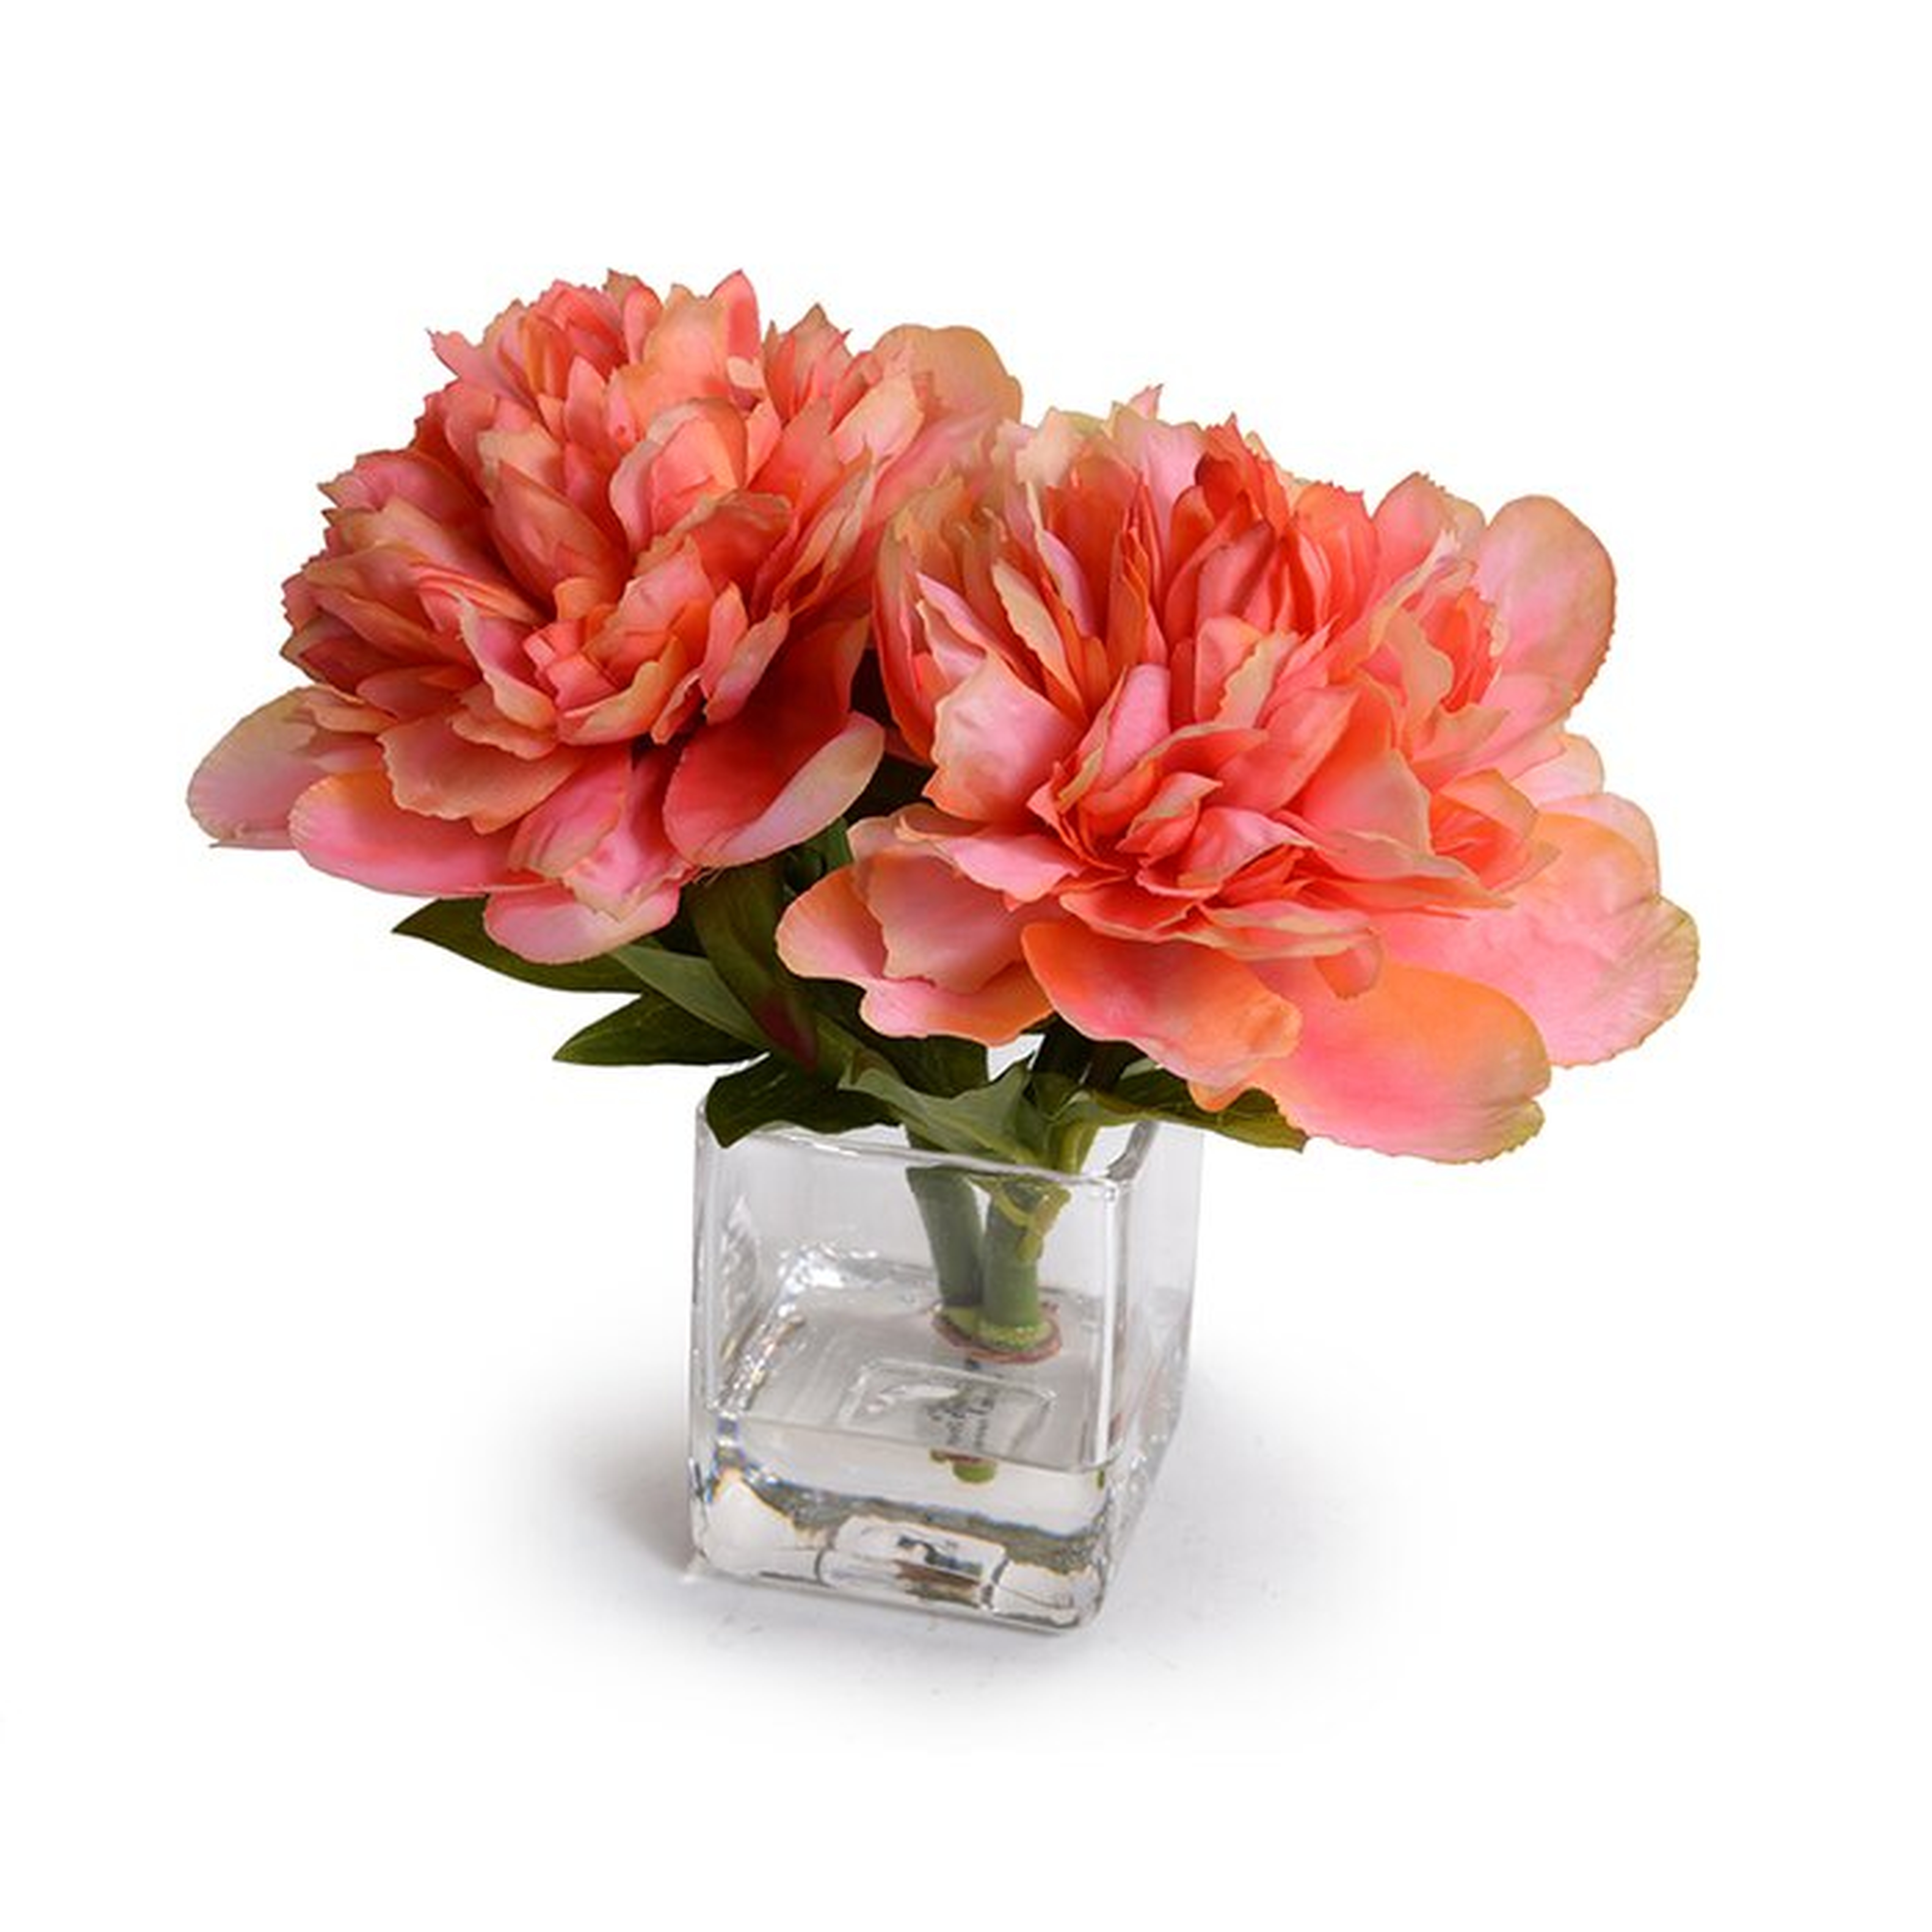 Coral Peonies Floral Arrangement in Vase - Wayfair